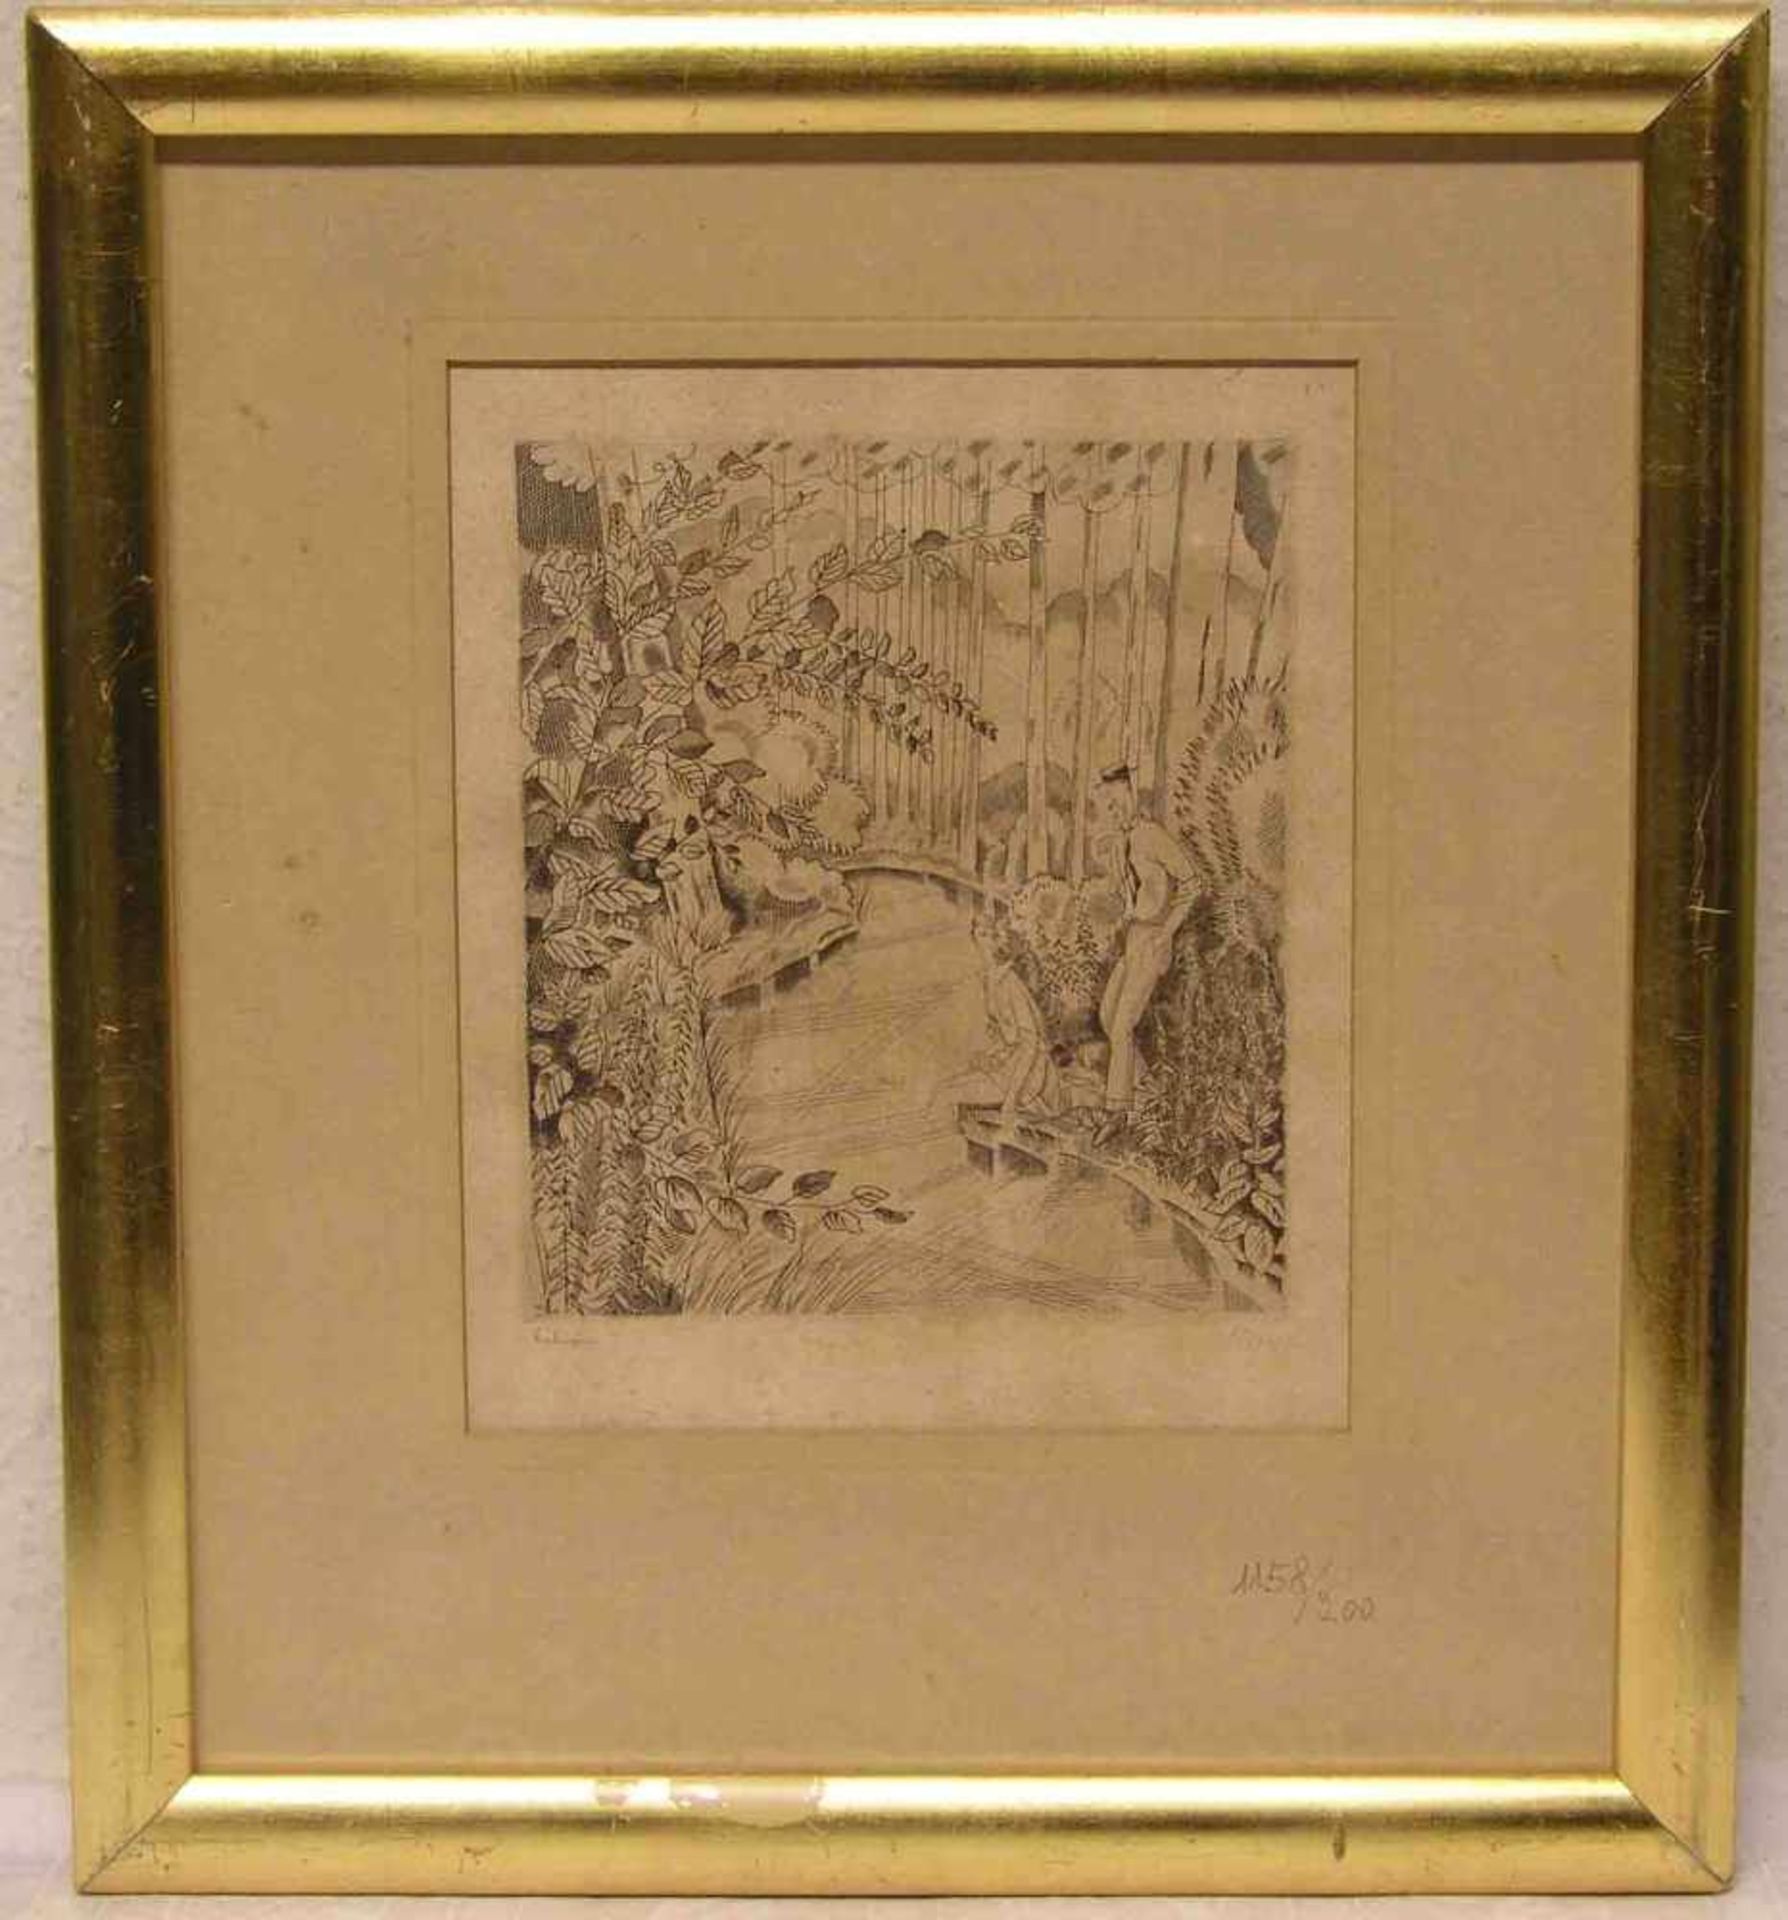 Laboureur, Jean Émile (1877 - 1943): "Pärchen am Flussufer". Stahlstich, signiert, 22 x18cm,